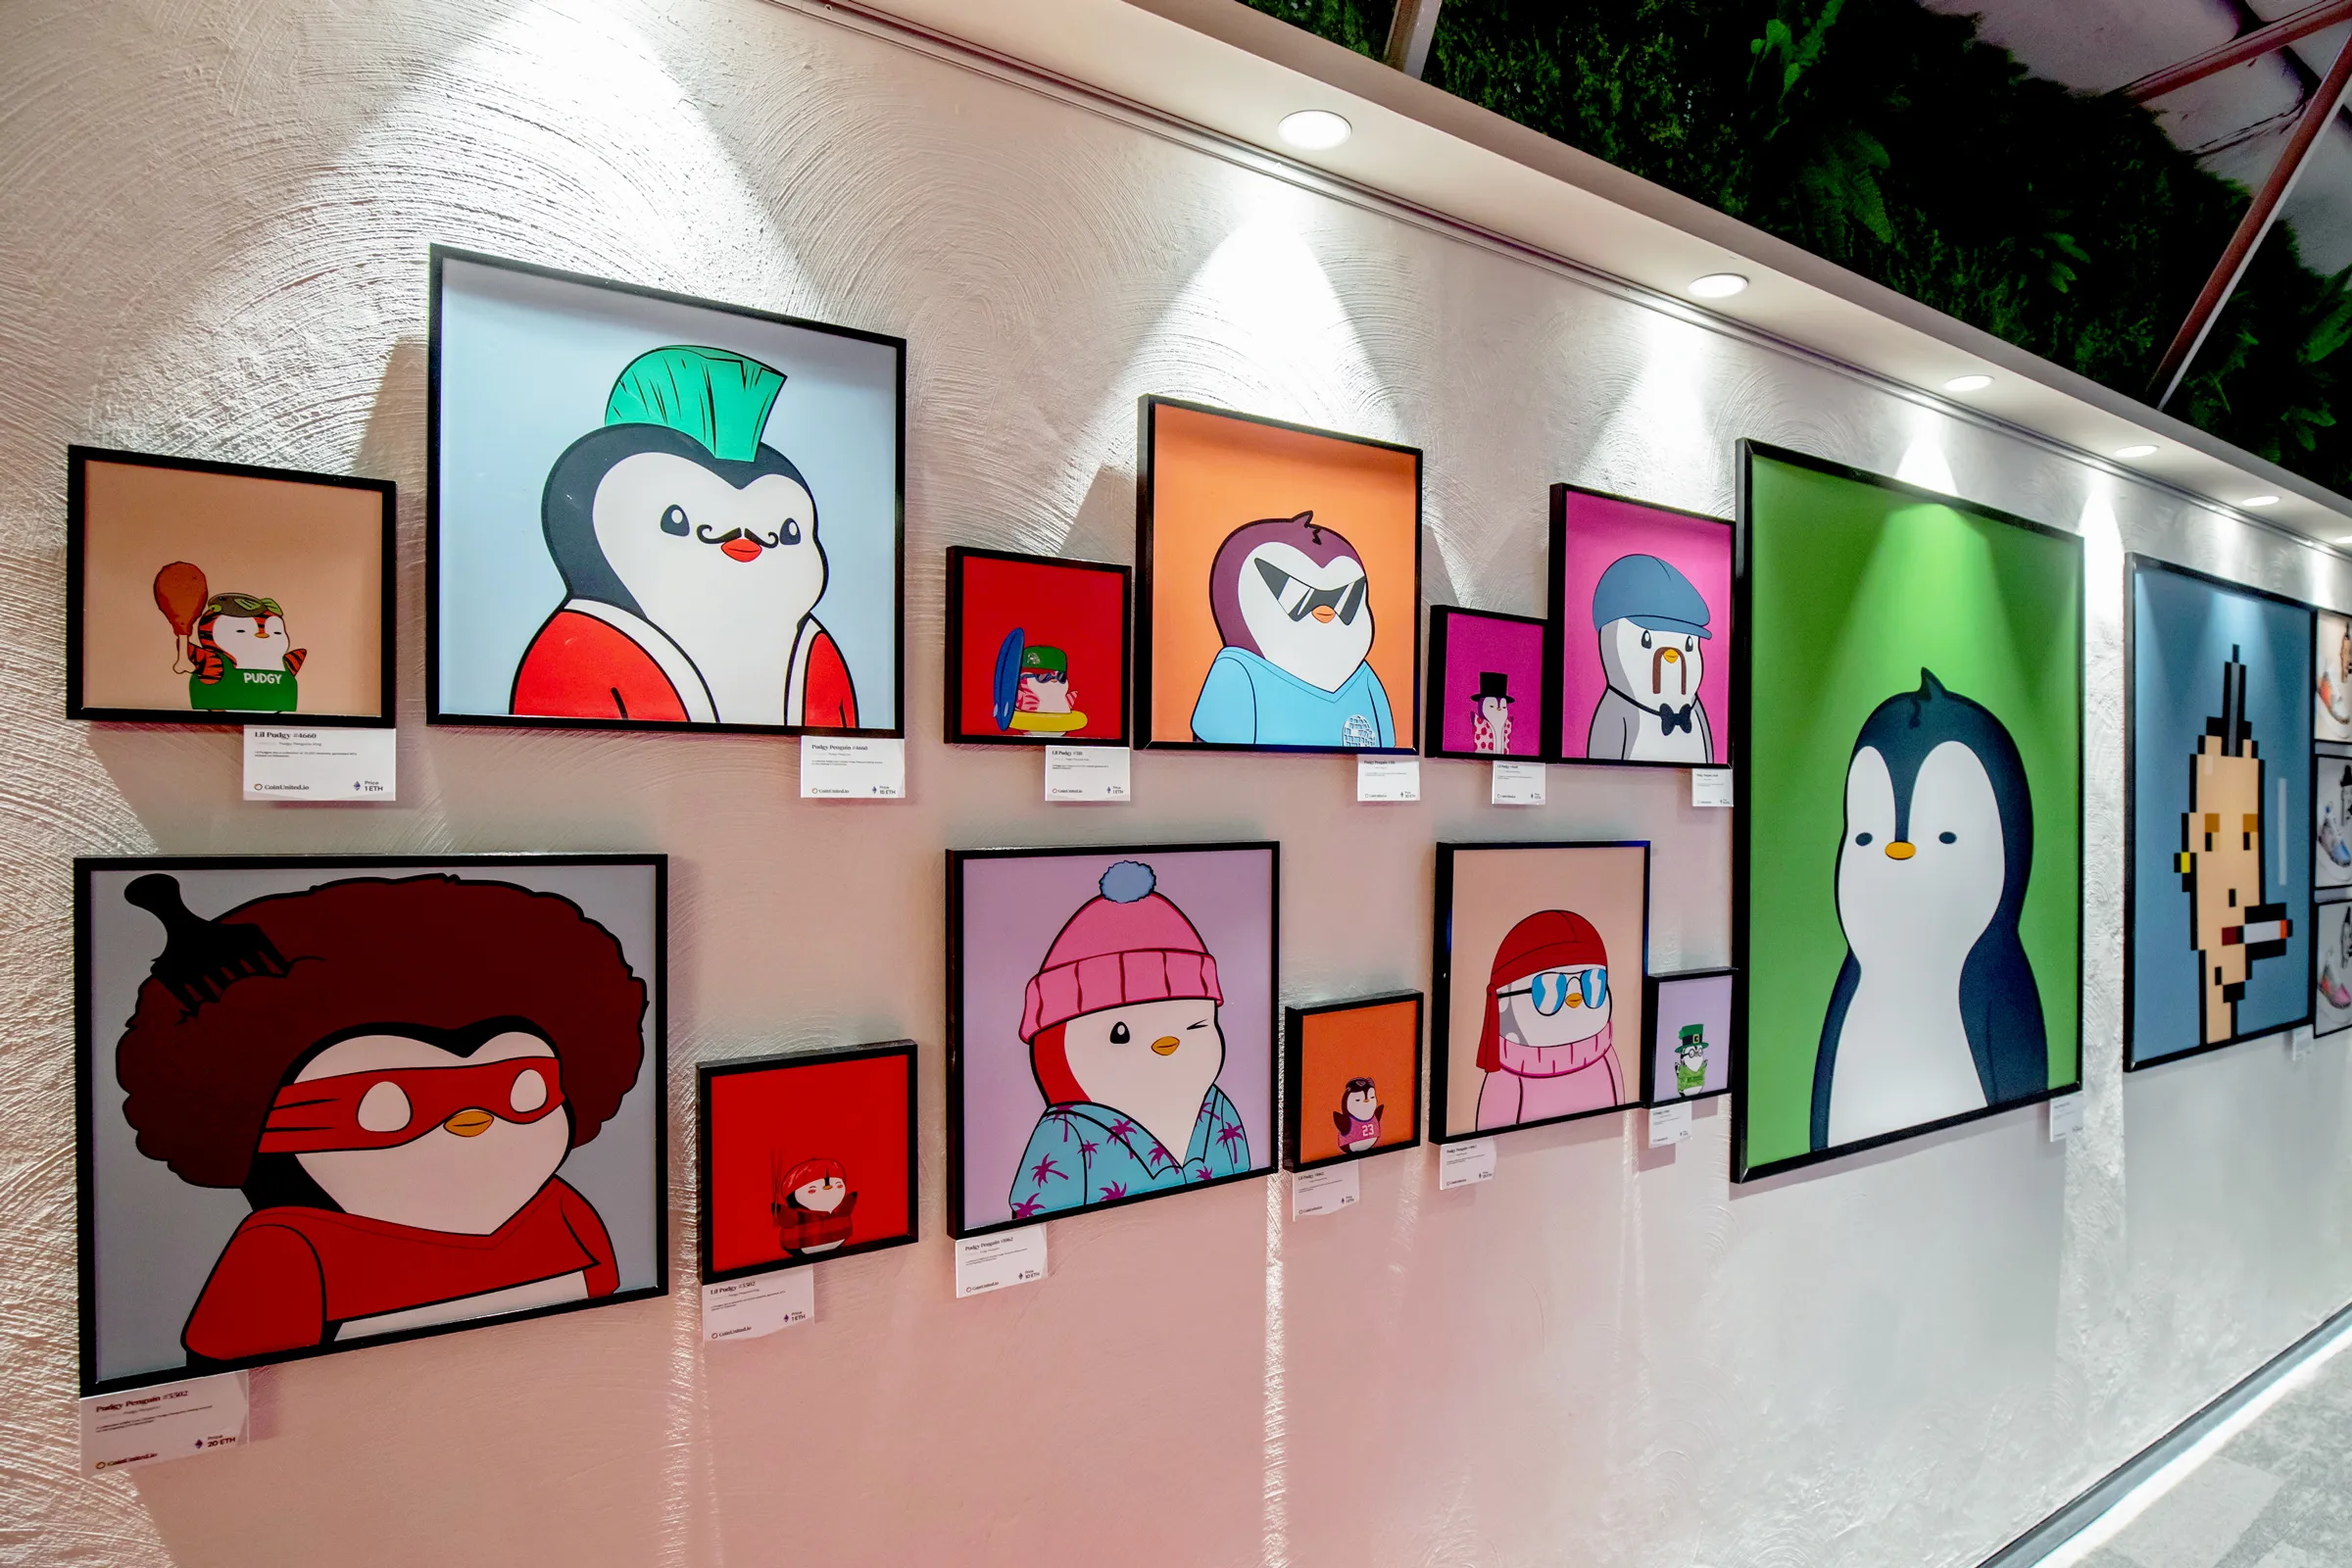 这是一排挂在墙上的卡通画像，画框整齐排列，每幅画下方都有说明标签，画面色彩鲜明，展现不同的卡通人物和动物。